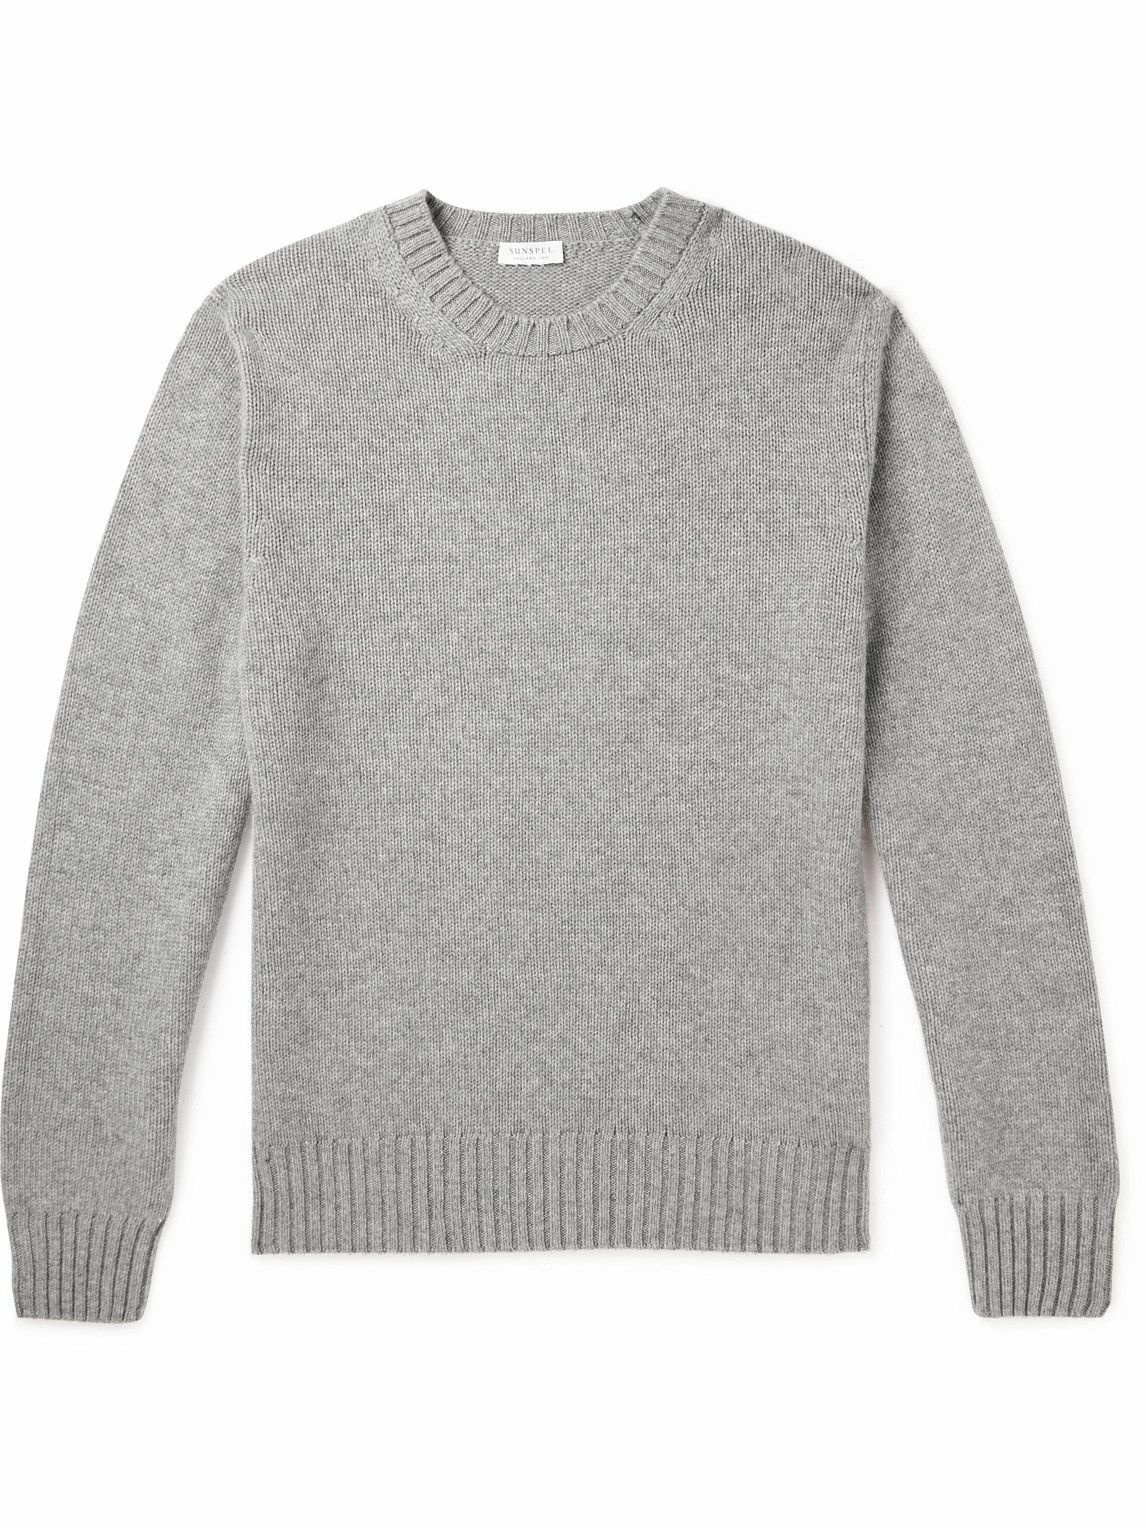 Sunspel - Cashmere Sweater - Gray Sunspel